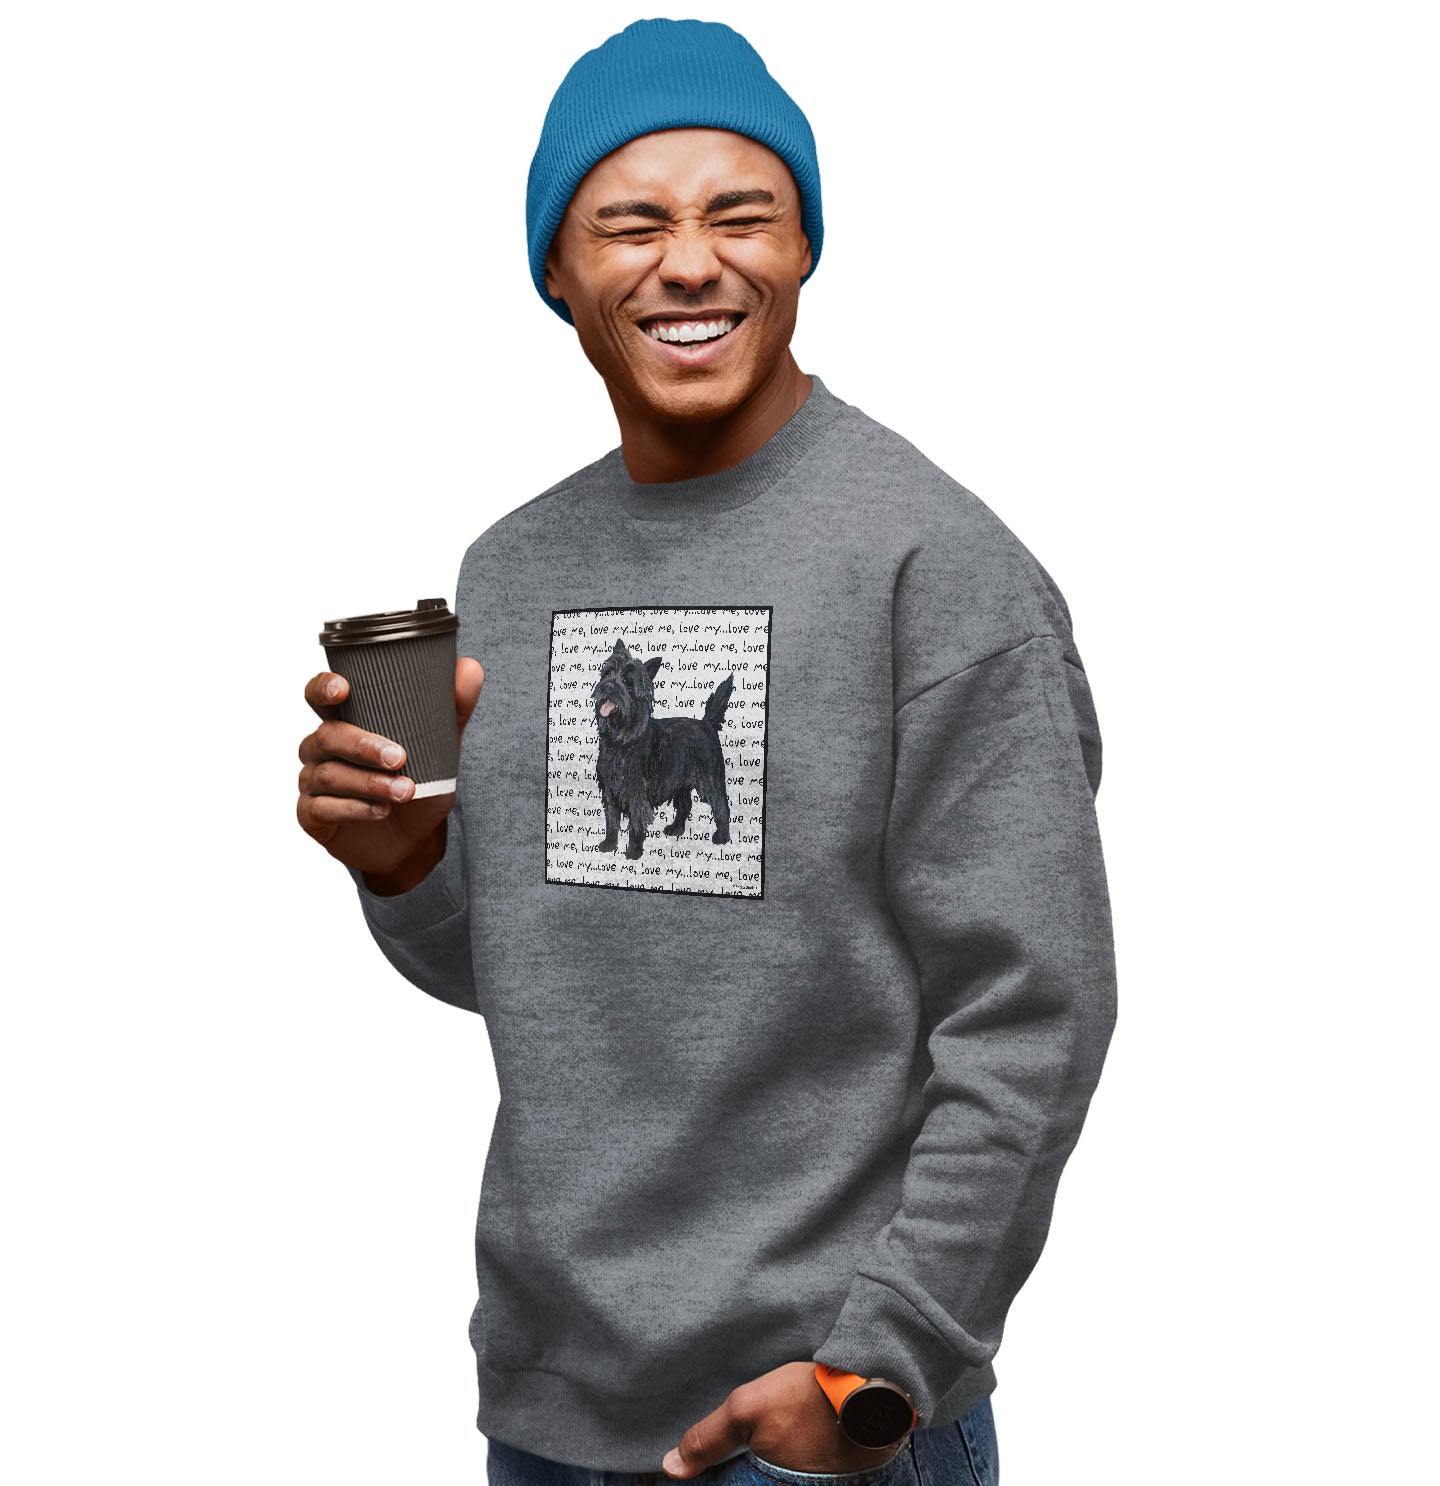 Cairn Terrier Love Text - Adult Unisex Crewneck Sweatshirt